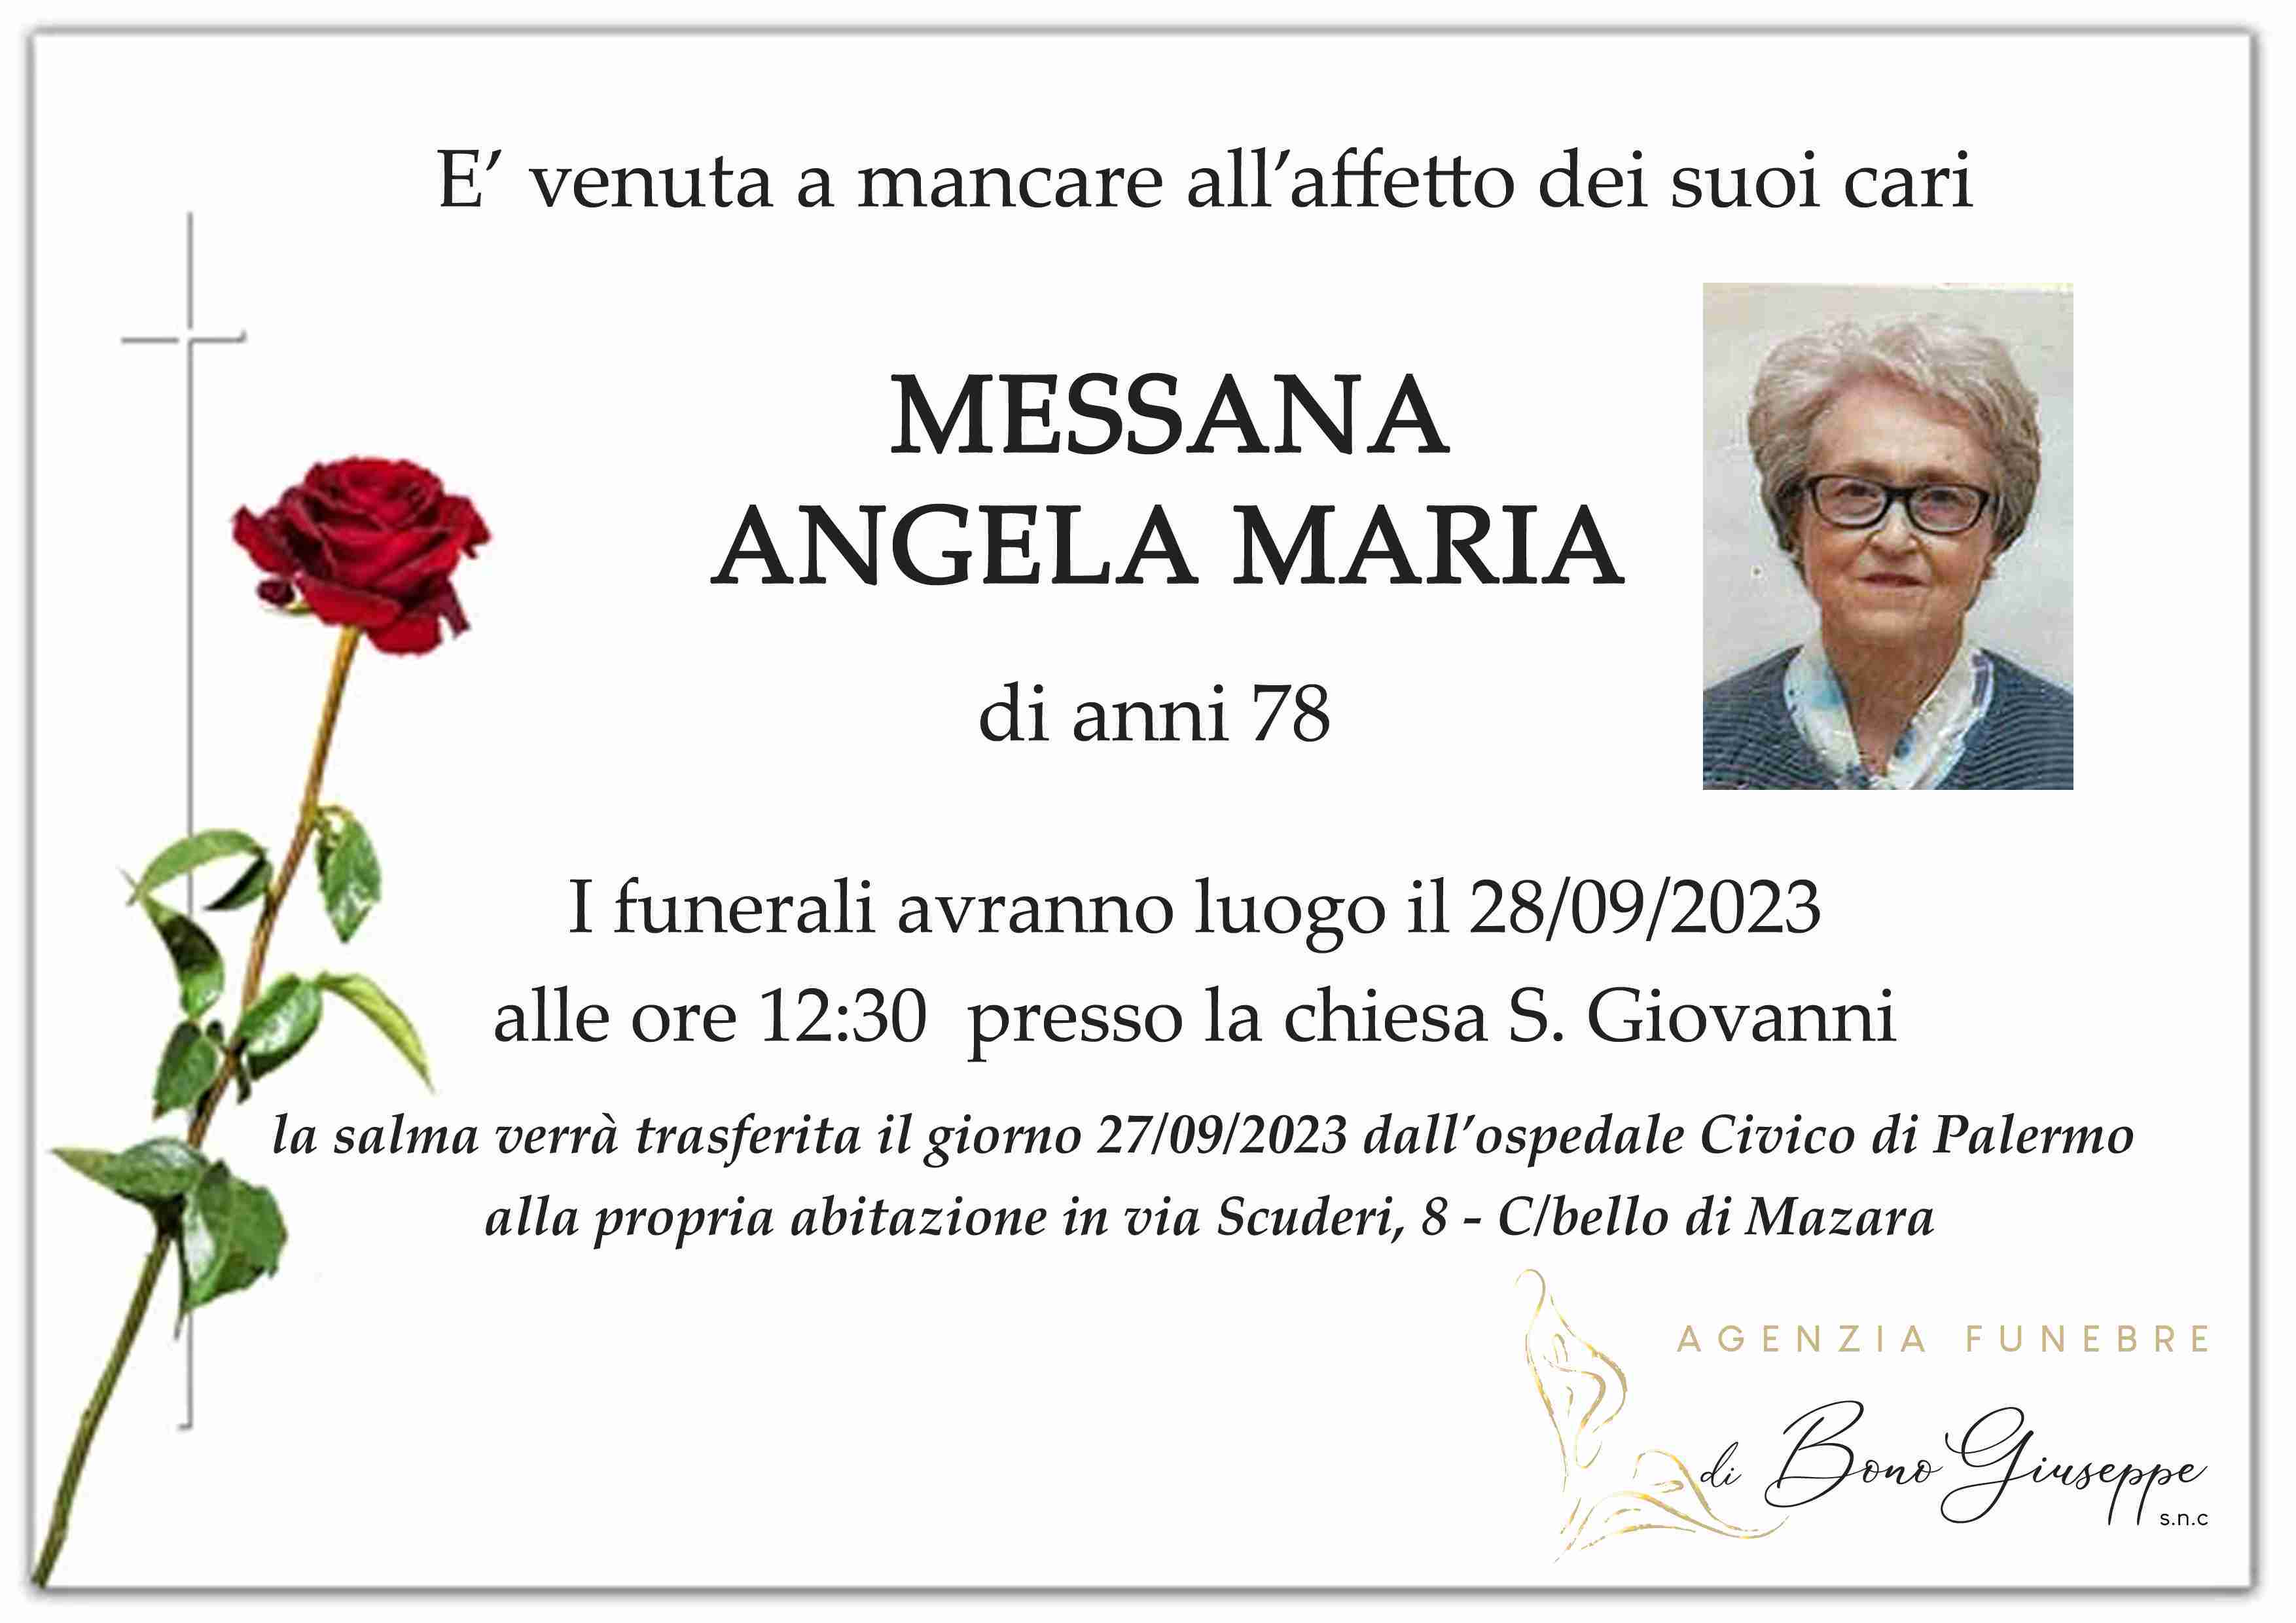 Angela Maria Messana